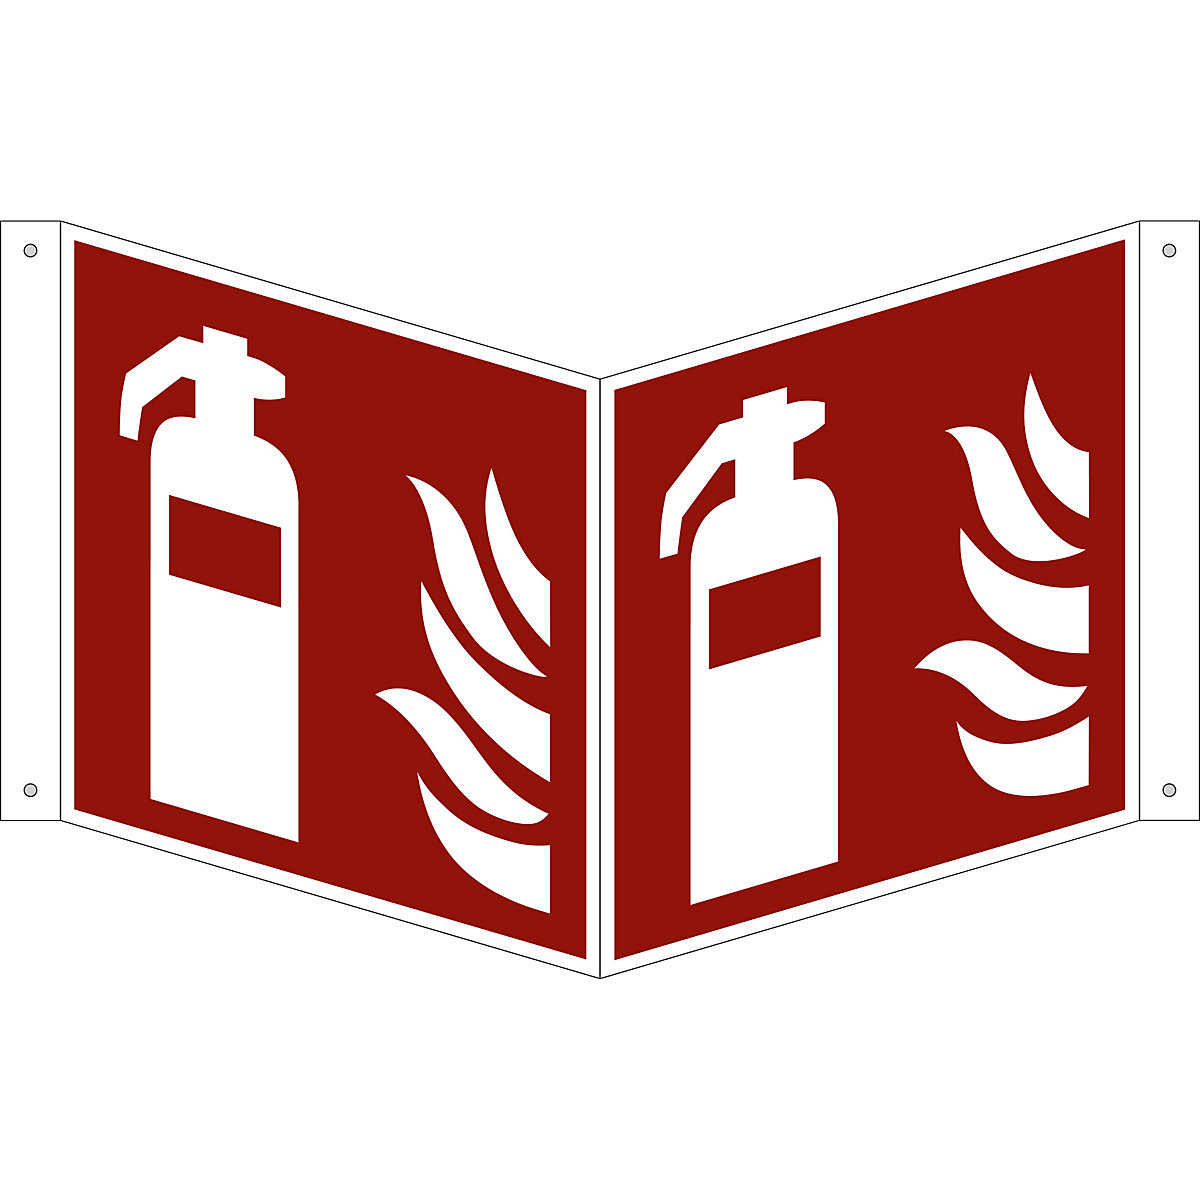 Značka pro ochranu proti požáru, hasicí přístroj, bal.j. 10 ks, plast, vysunutý štítek, 200 x 200 mm